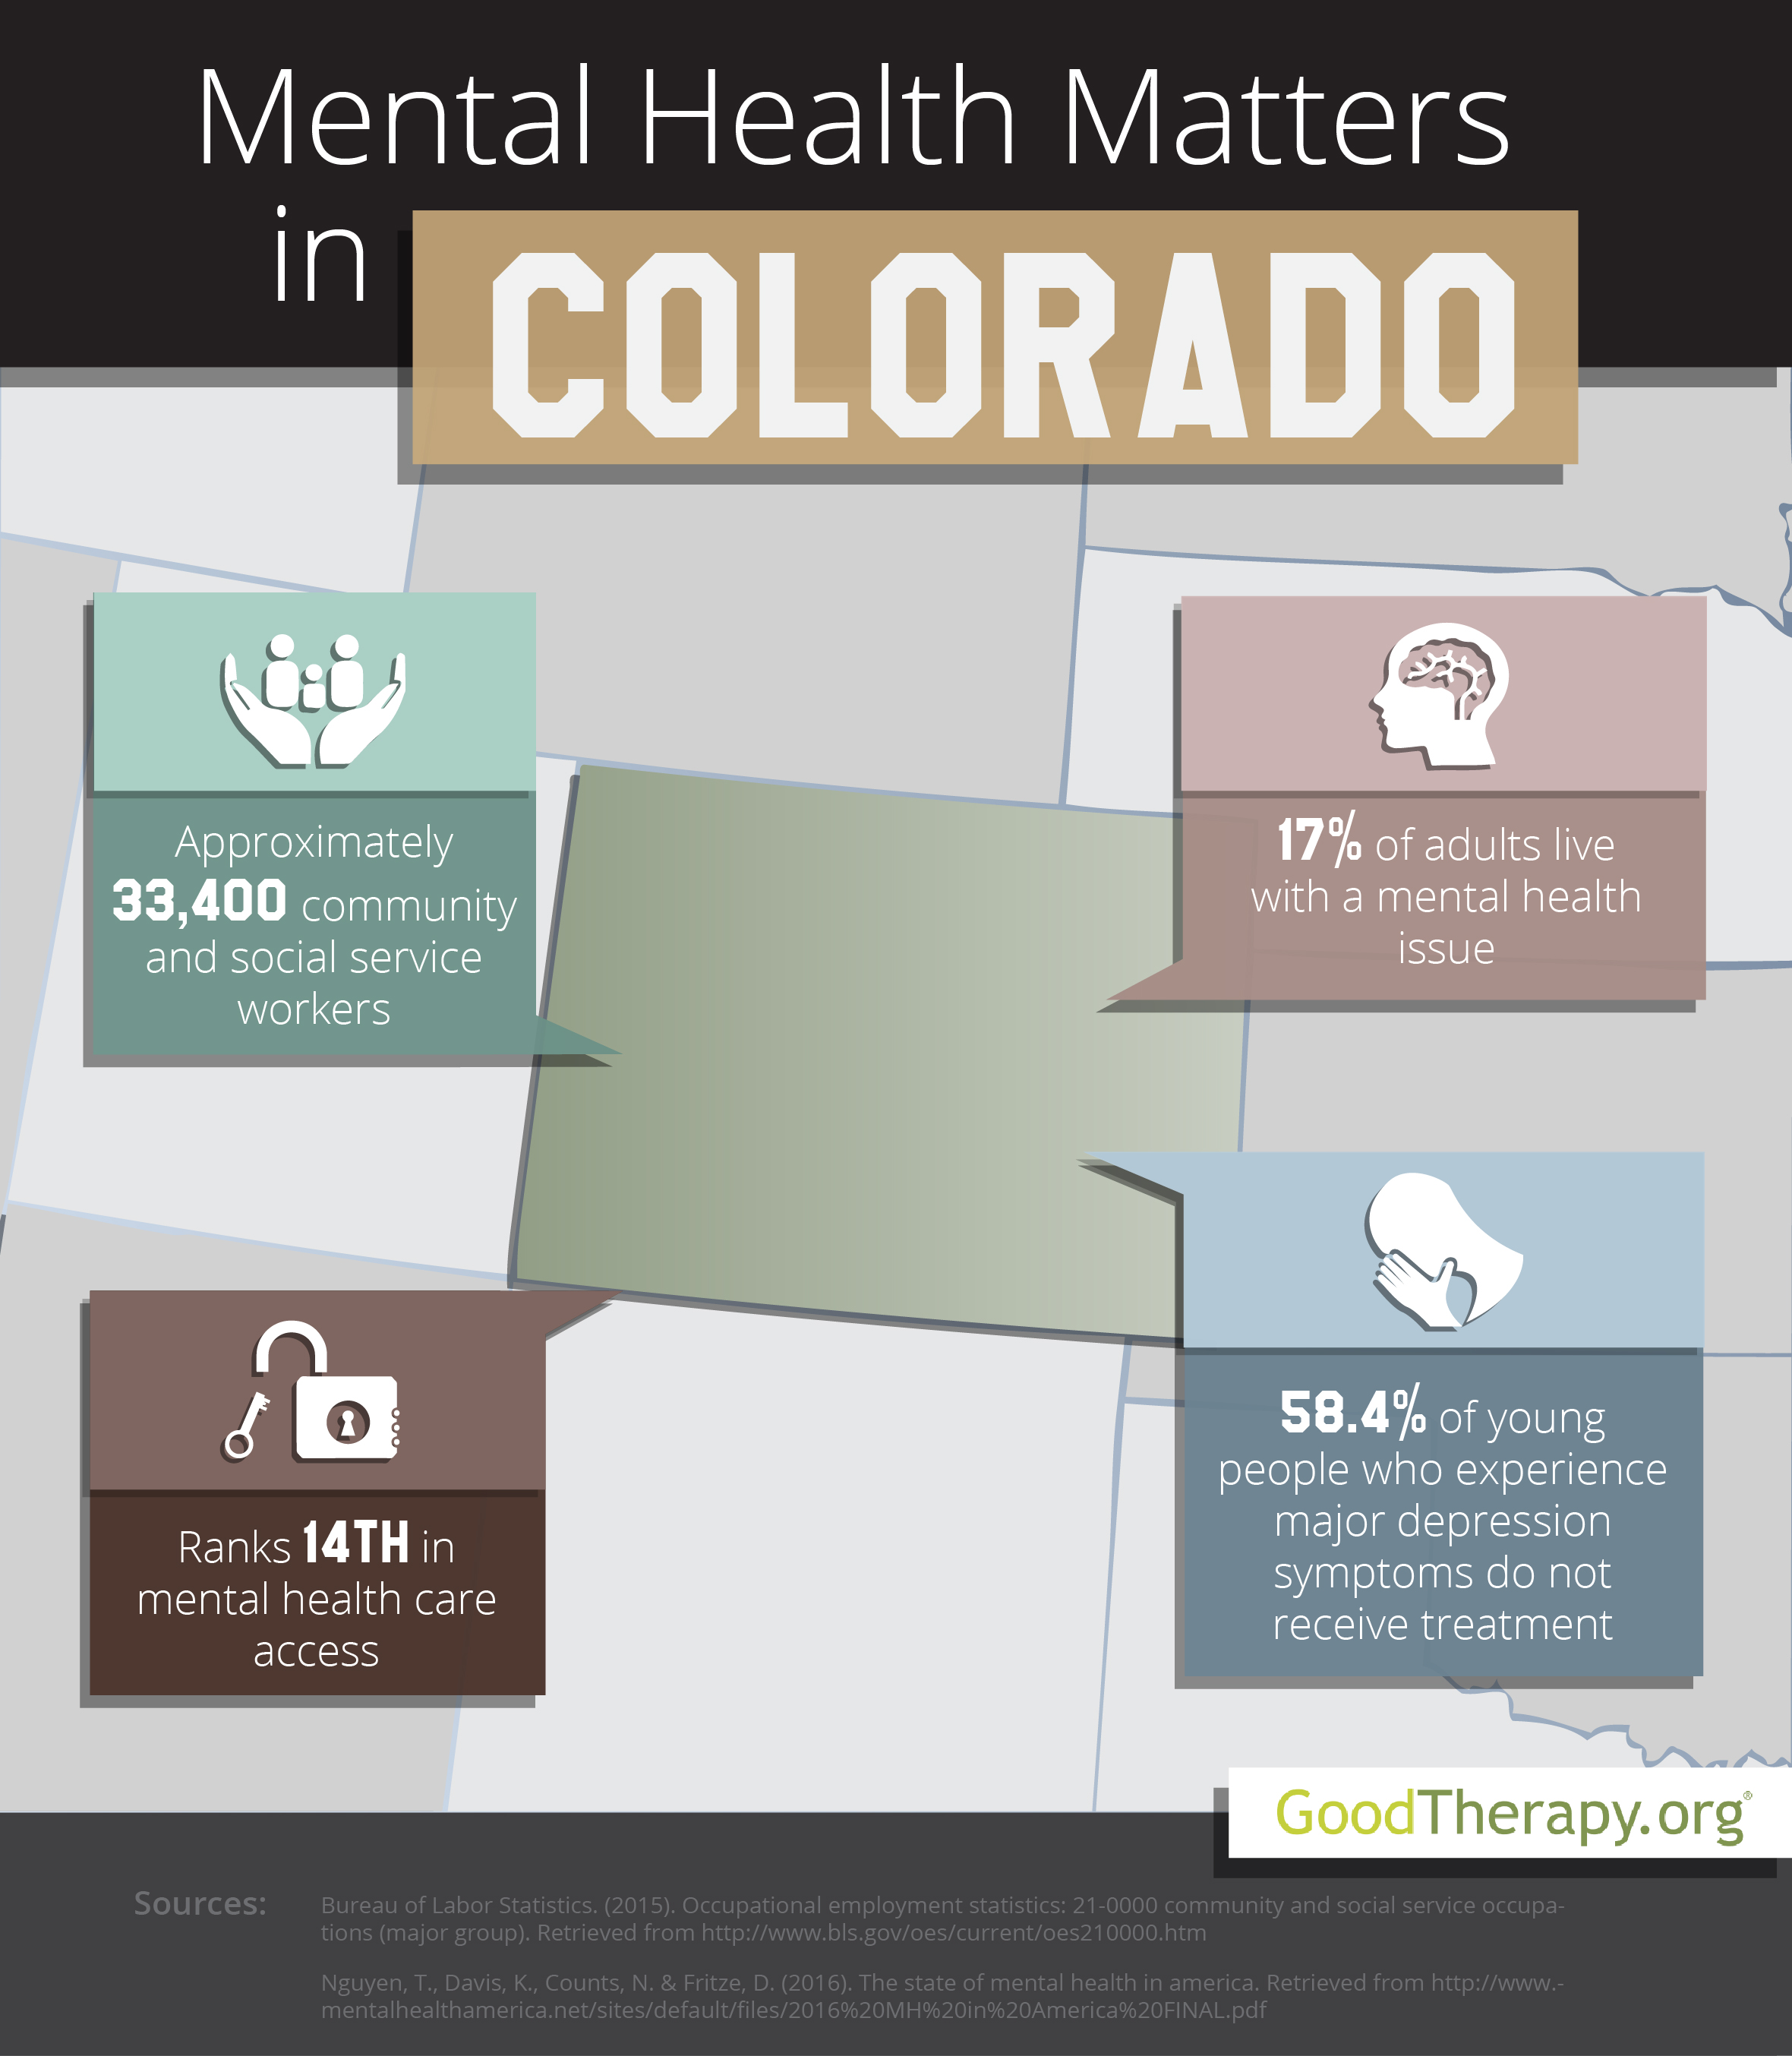 Colorado Mental Health Statistics